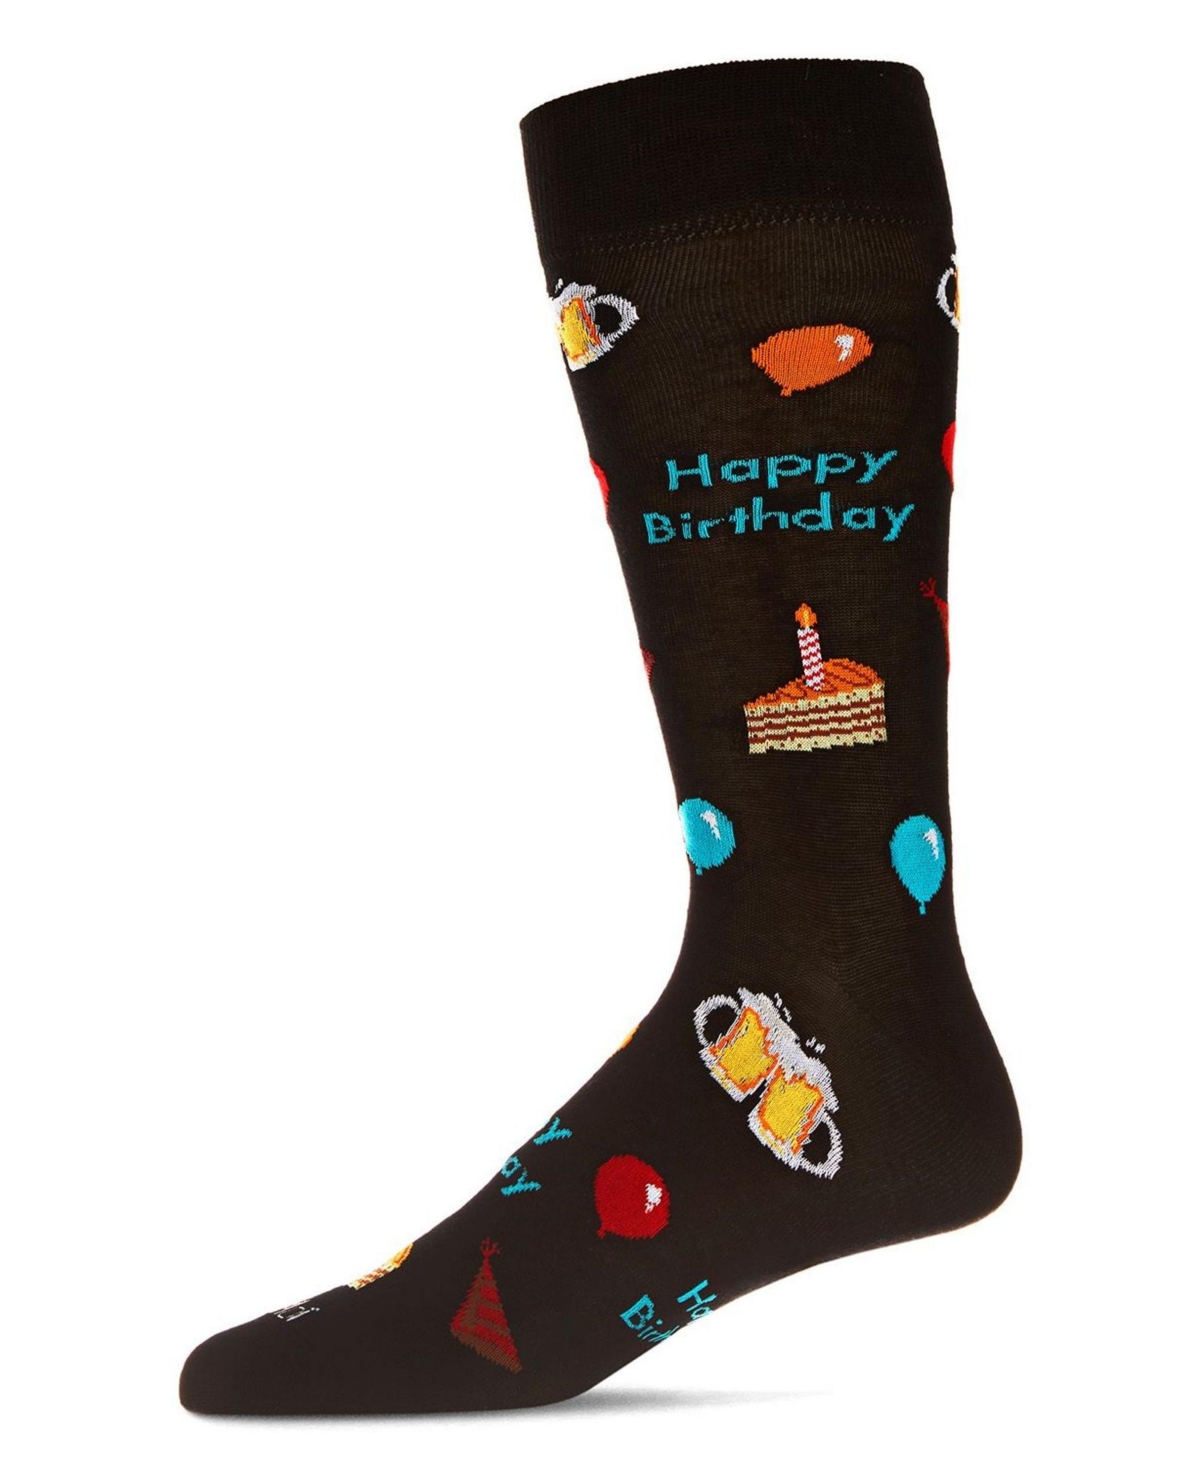 Men's Happy Birthday Rayon from Bamboo Novelty Crew Socks - Black